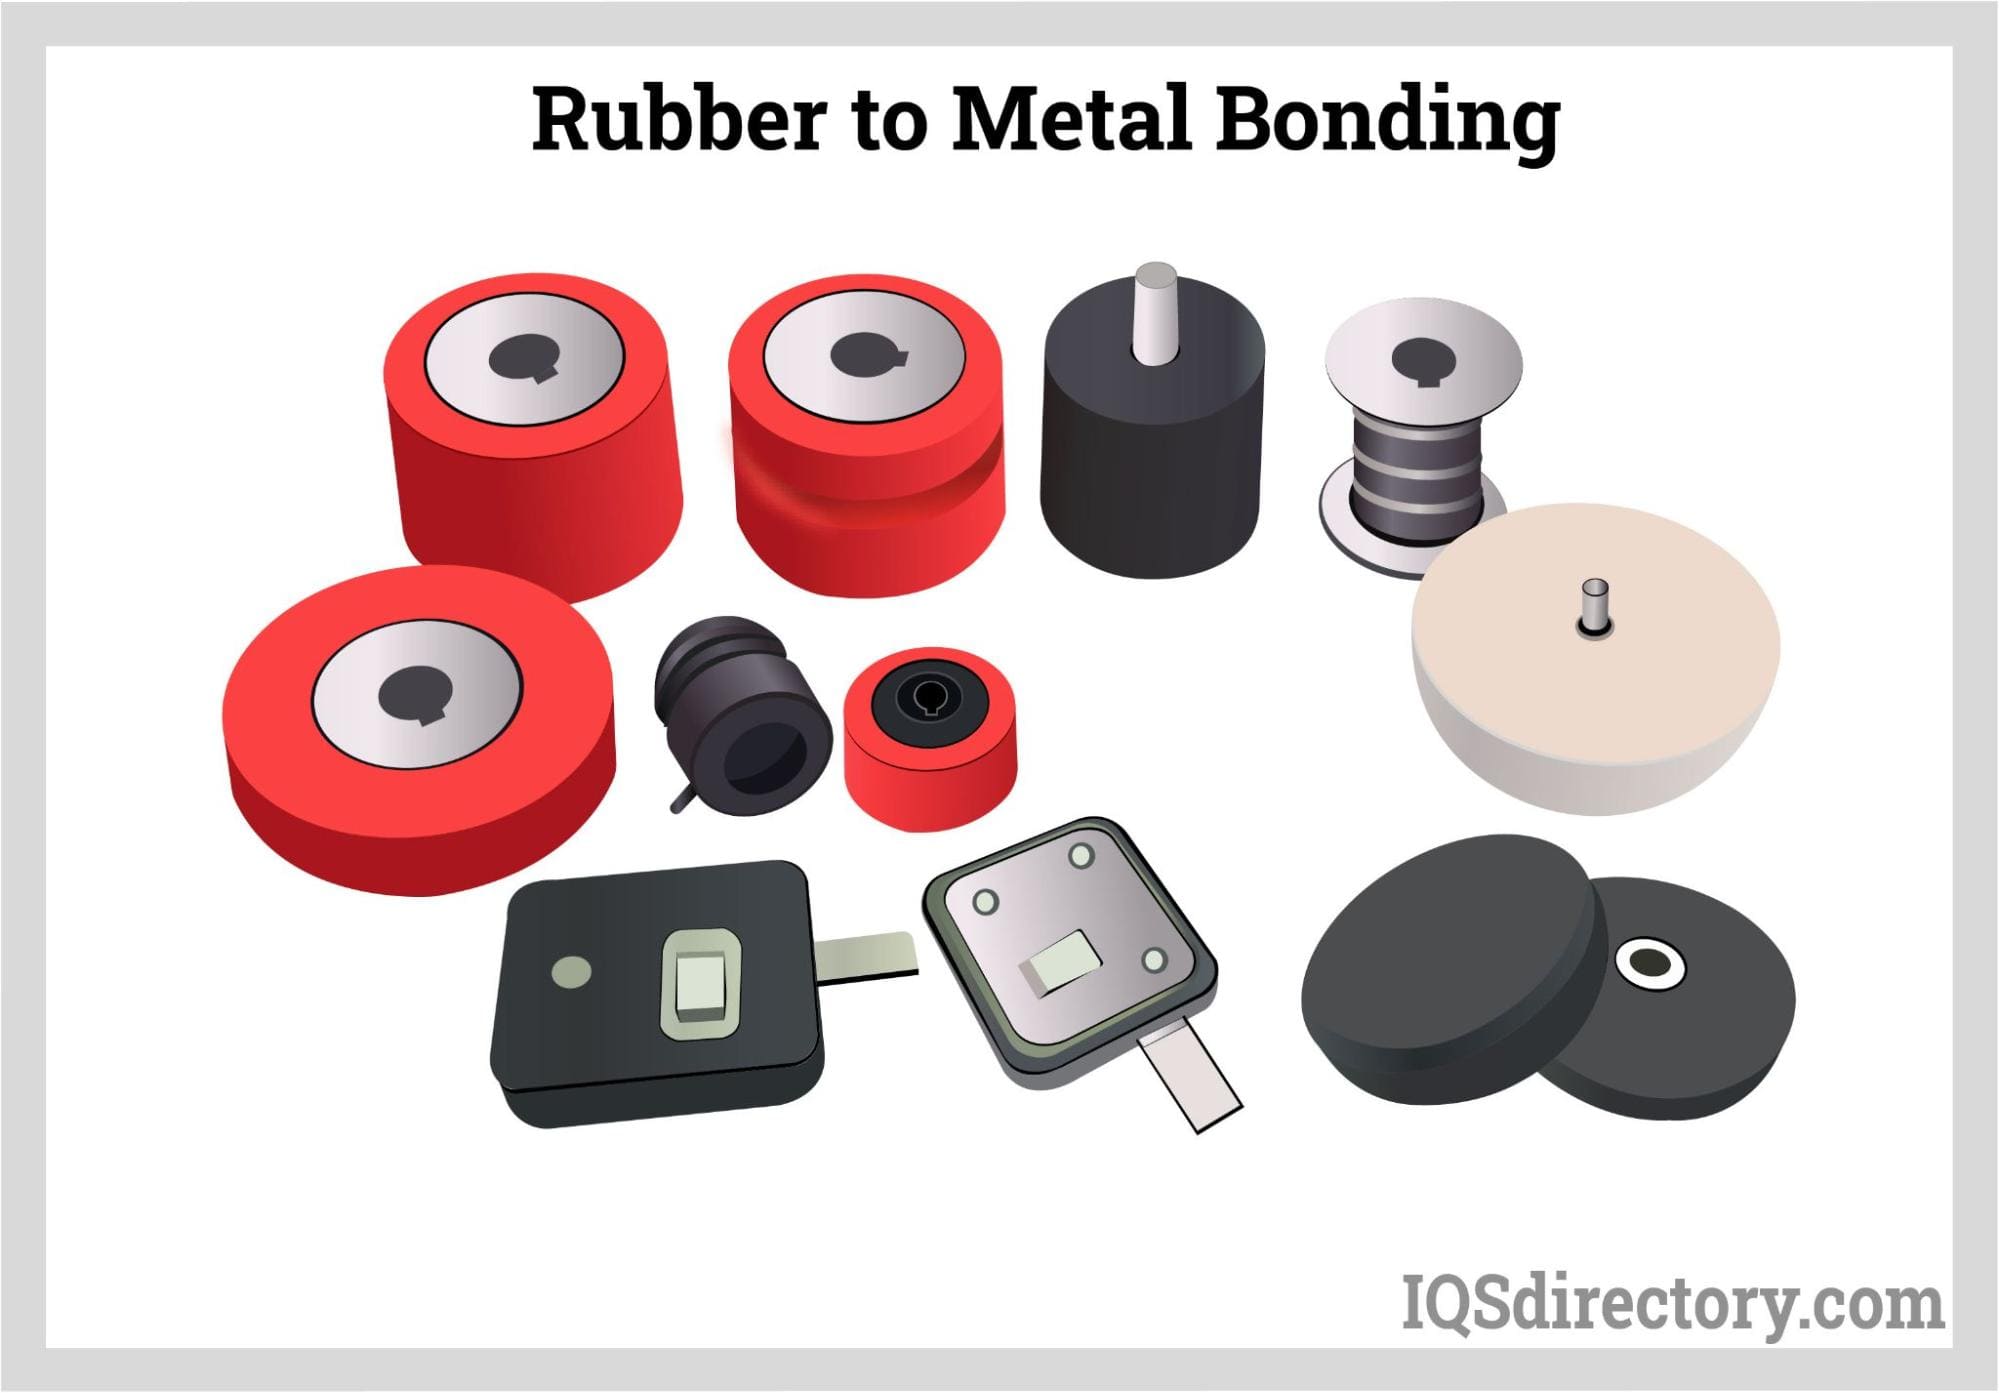 Rubber to Metal Bonding